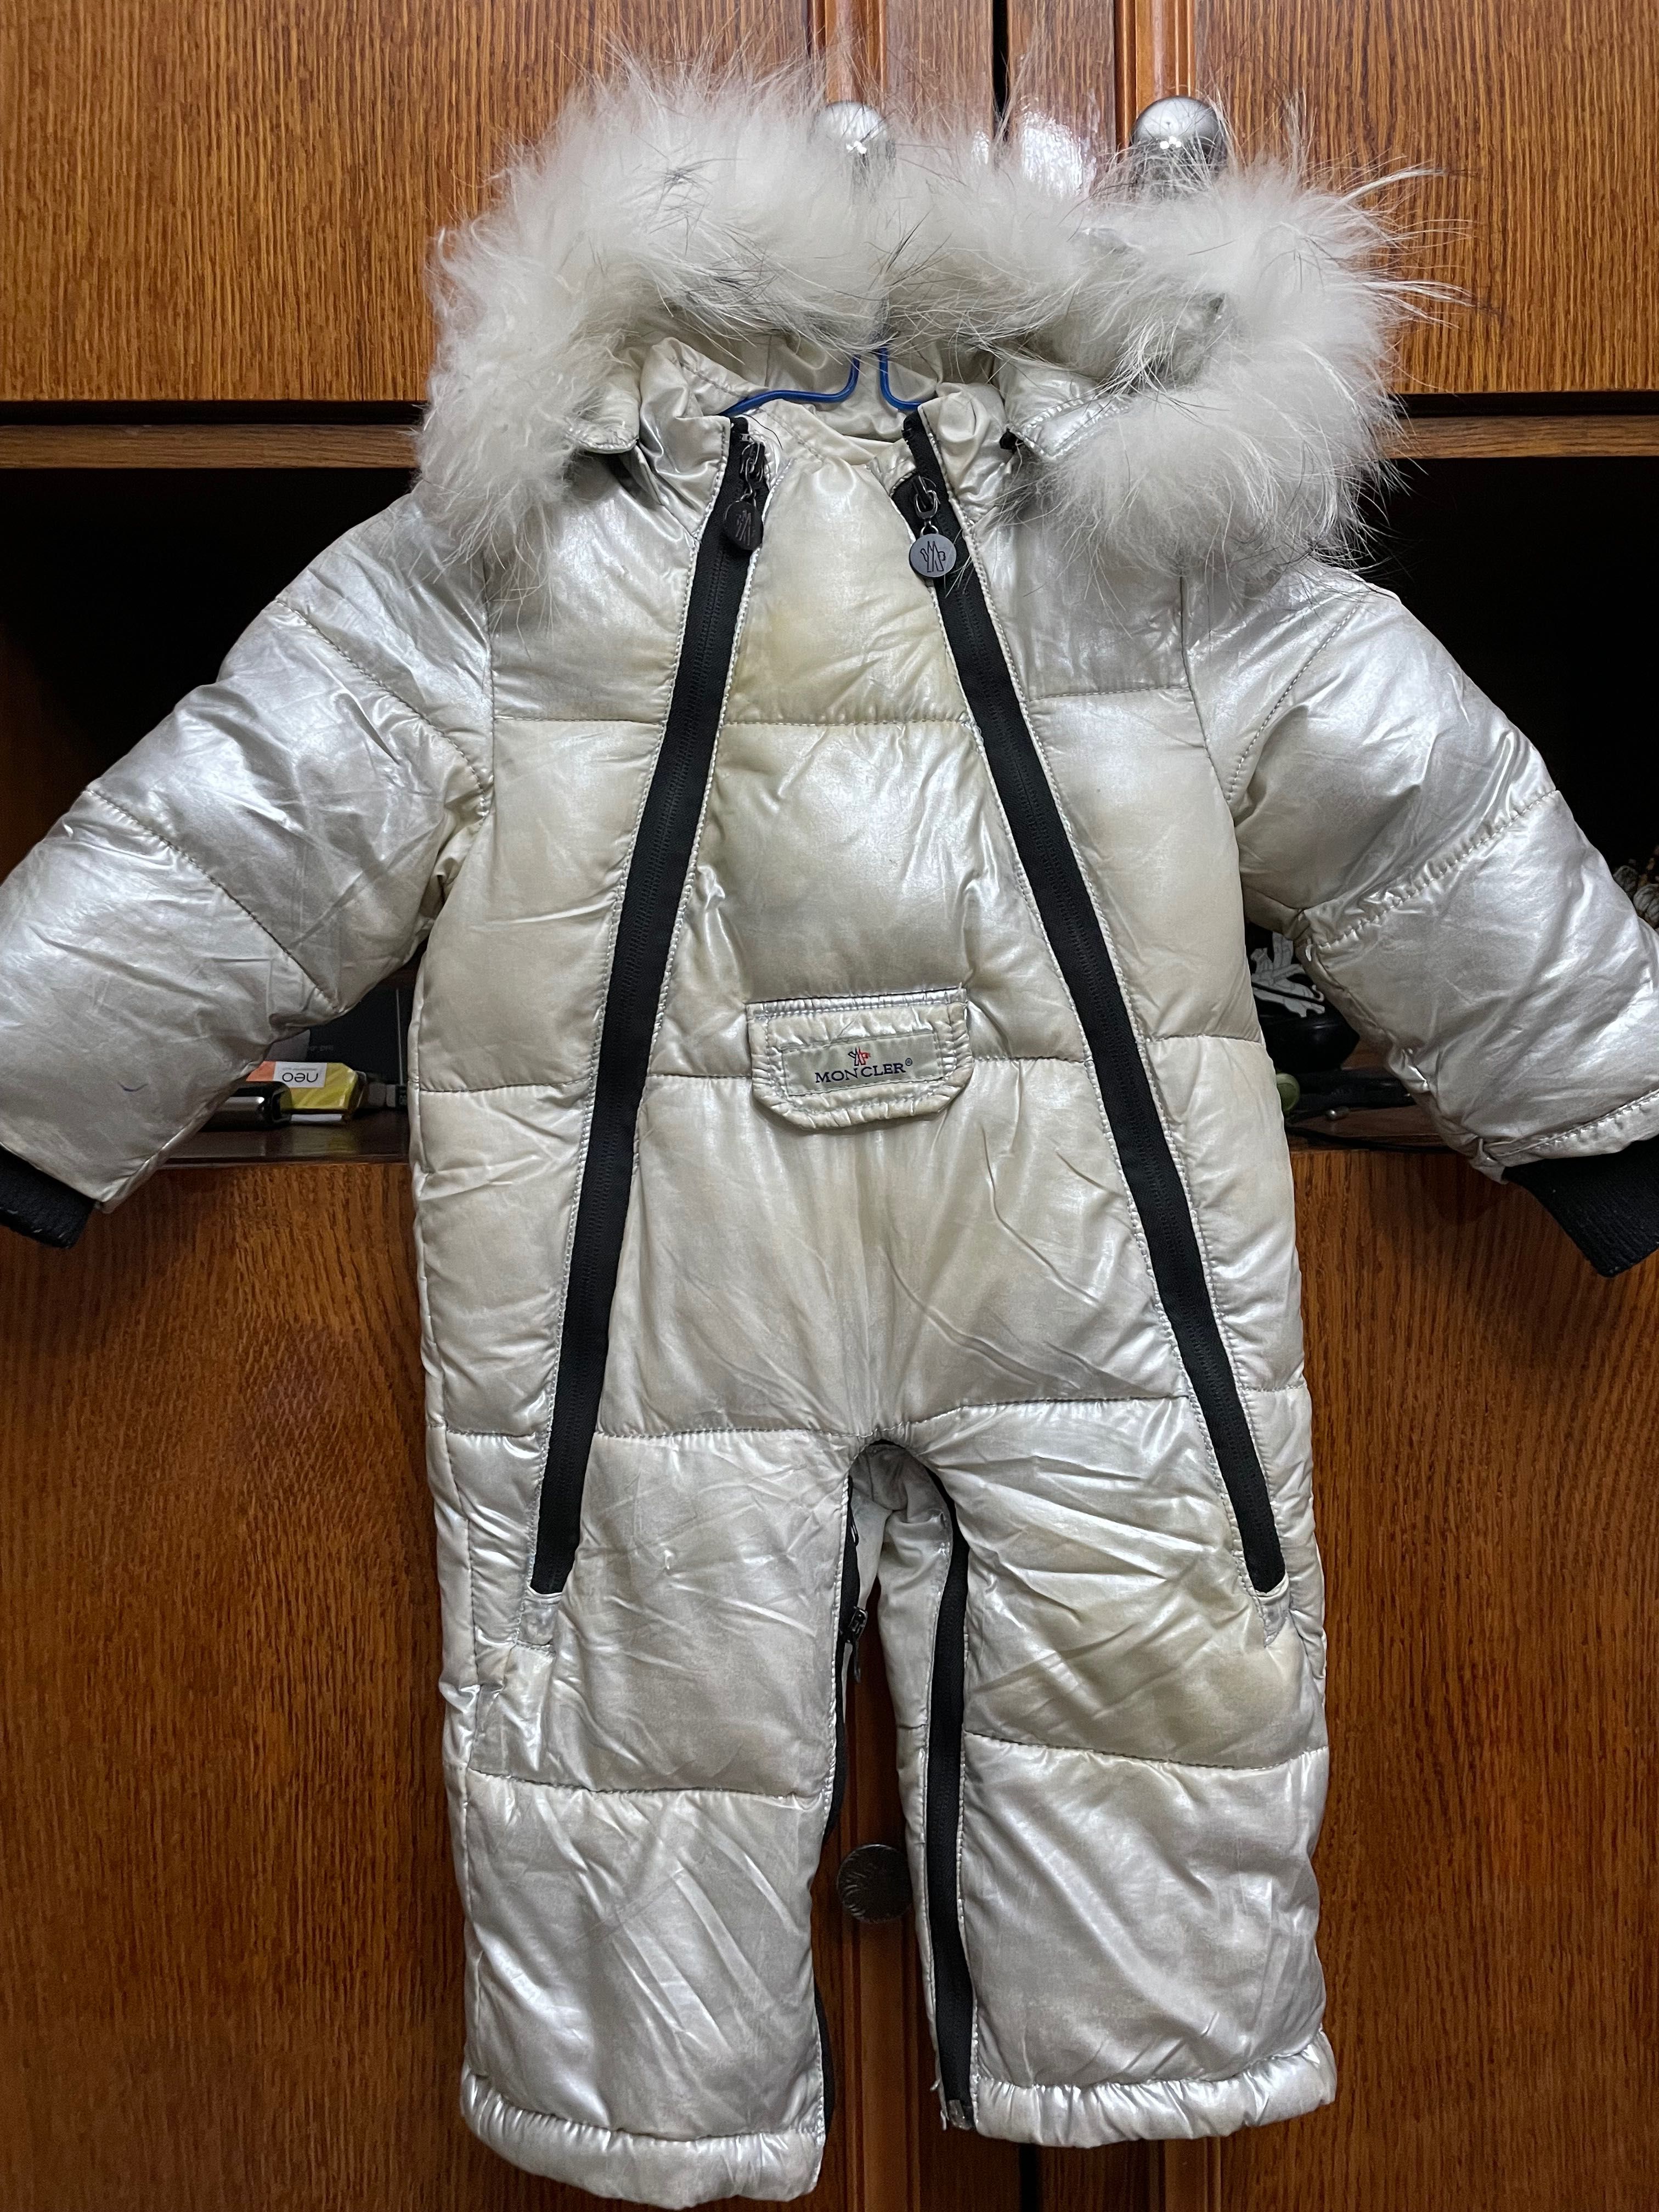 Детская зимняя куртка для мальчика